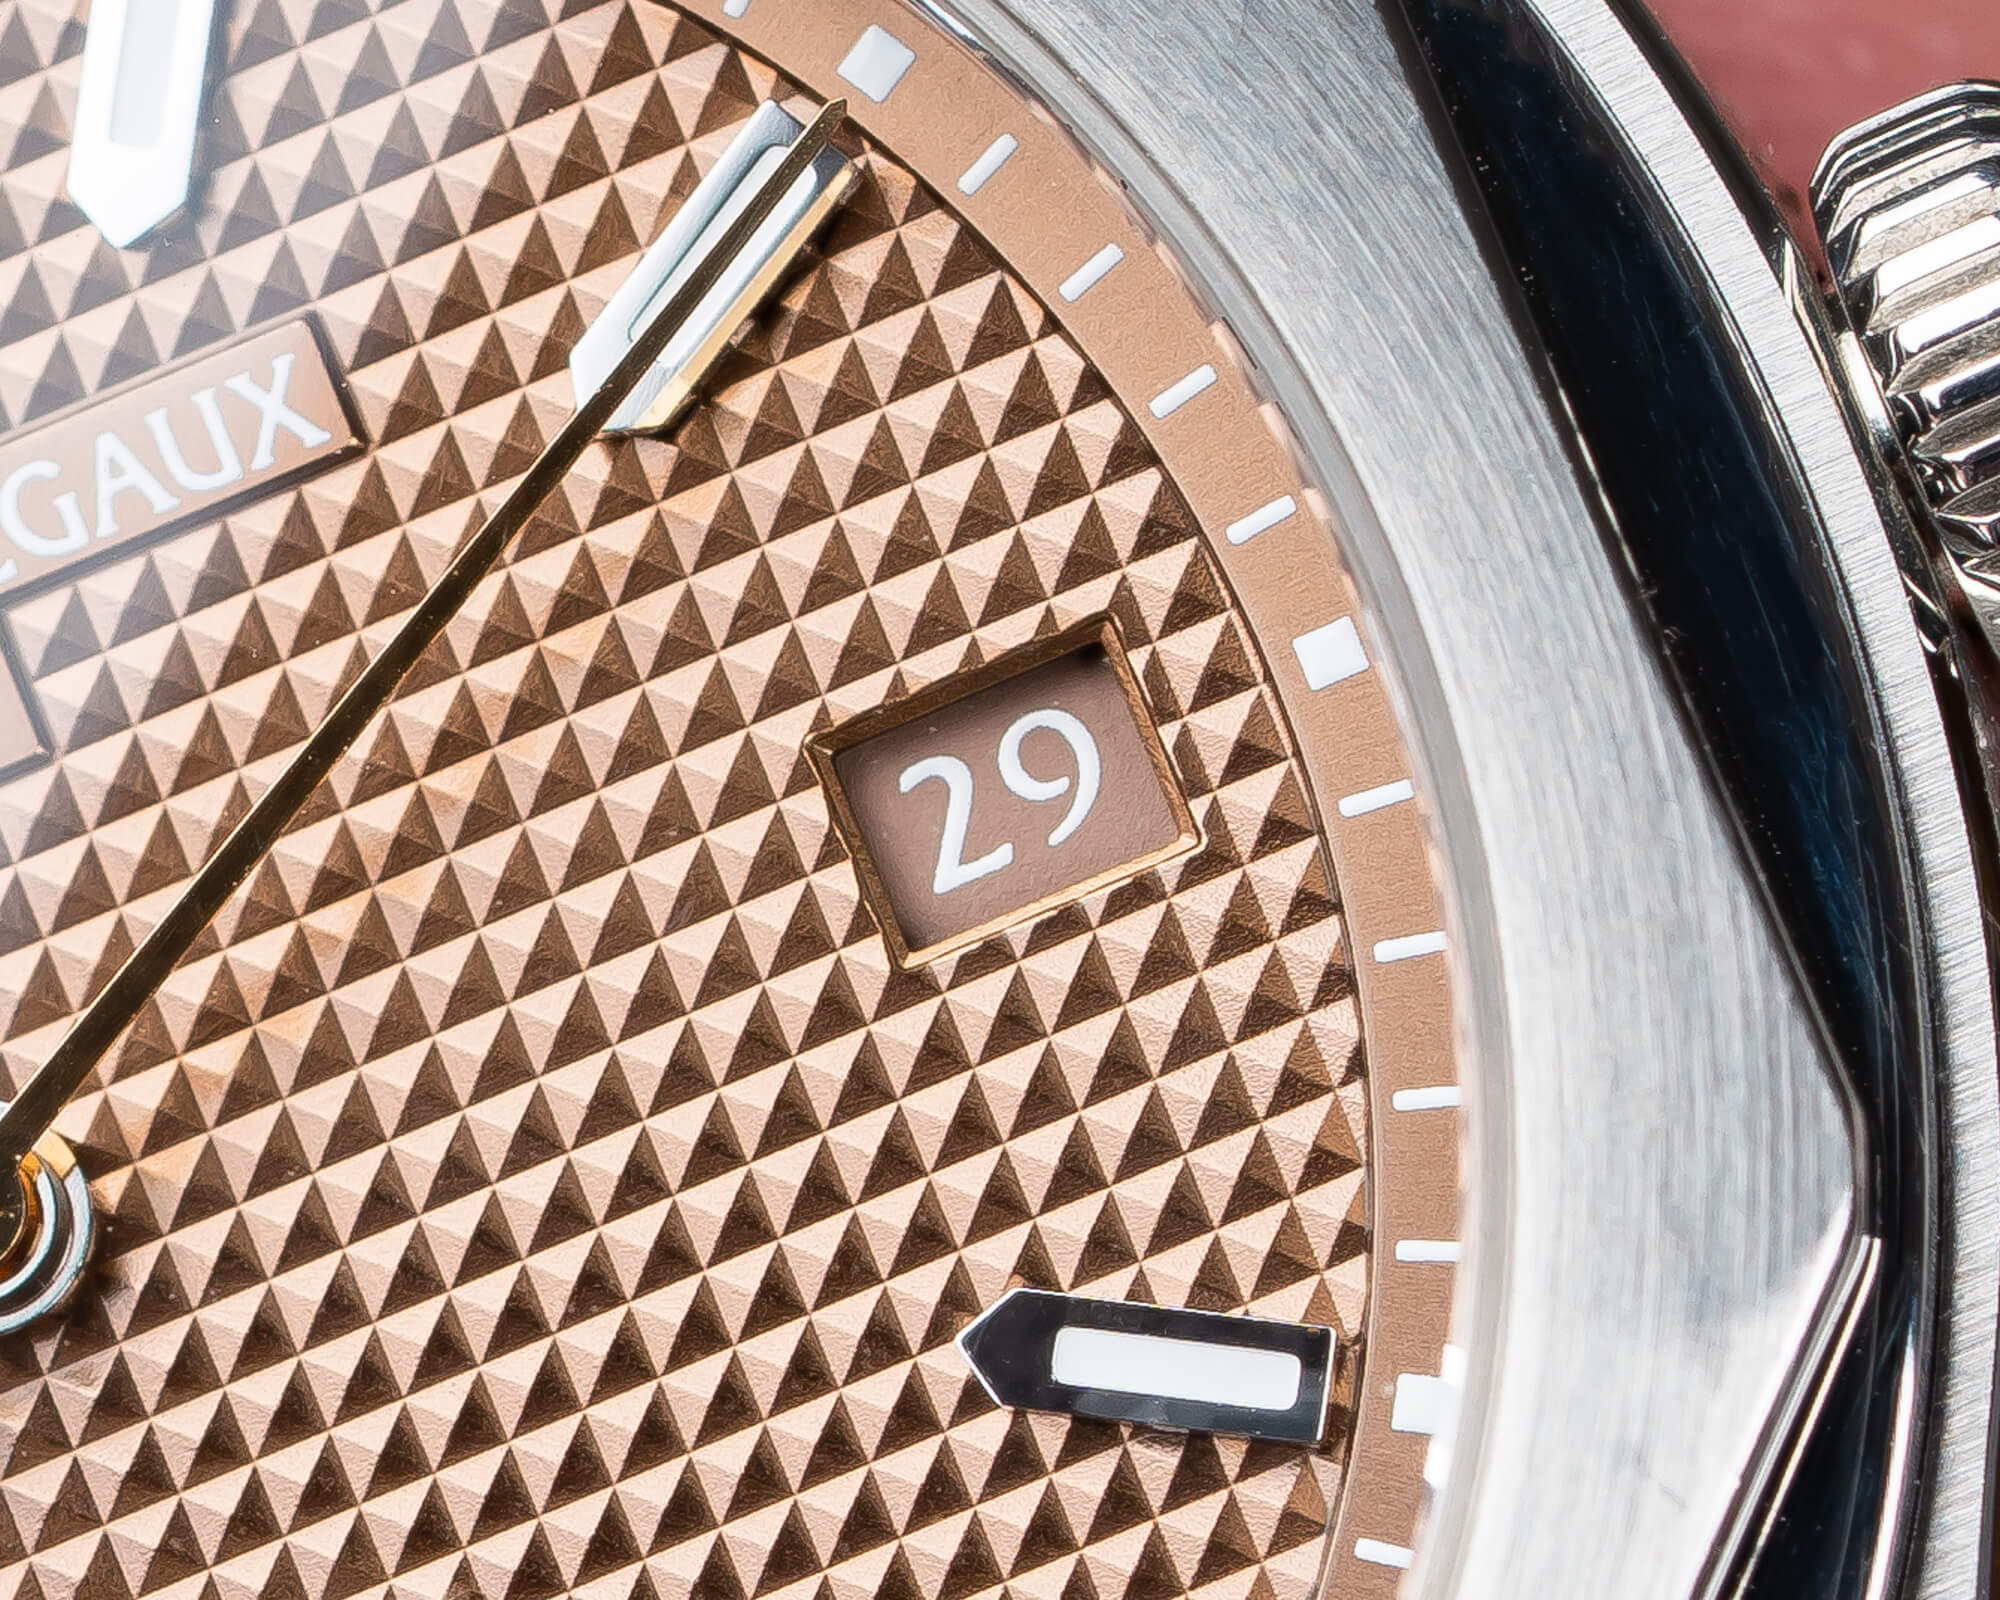 Обзор часов: Girard-Perregaux Laureato 38mm и его замысловатый циферблат